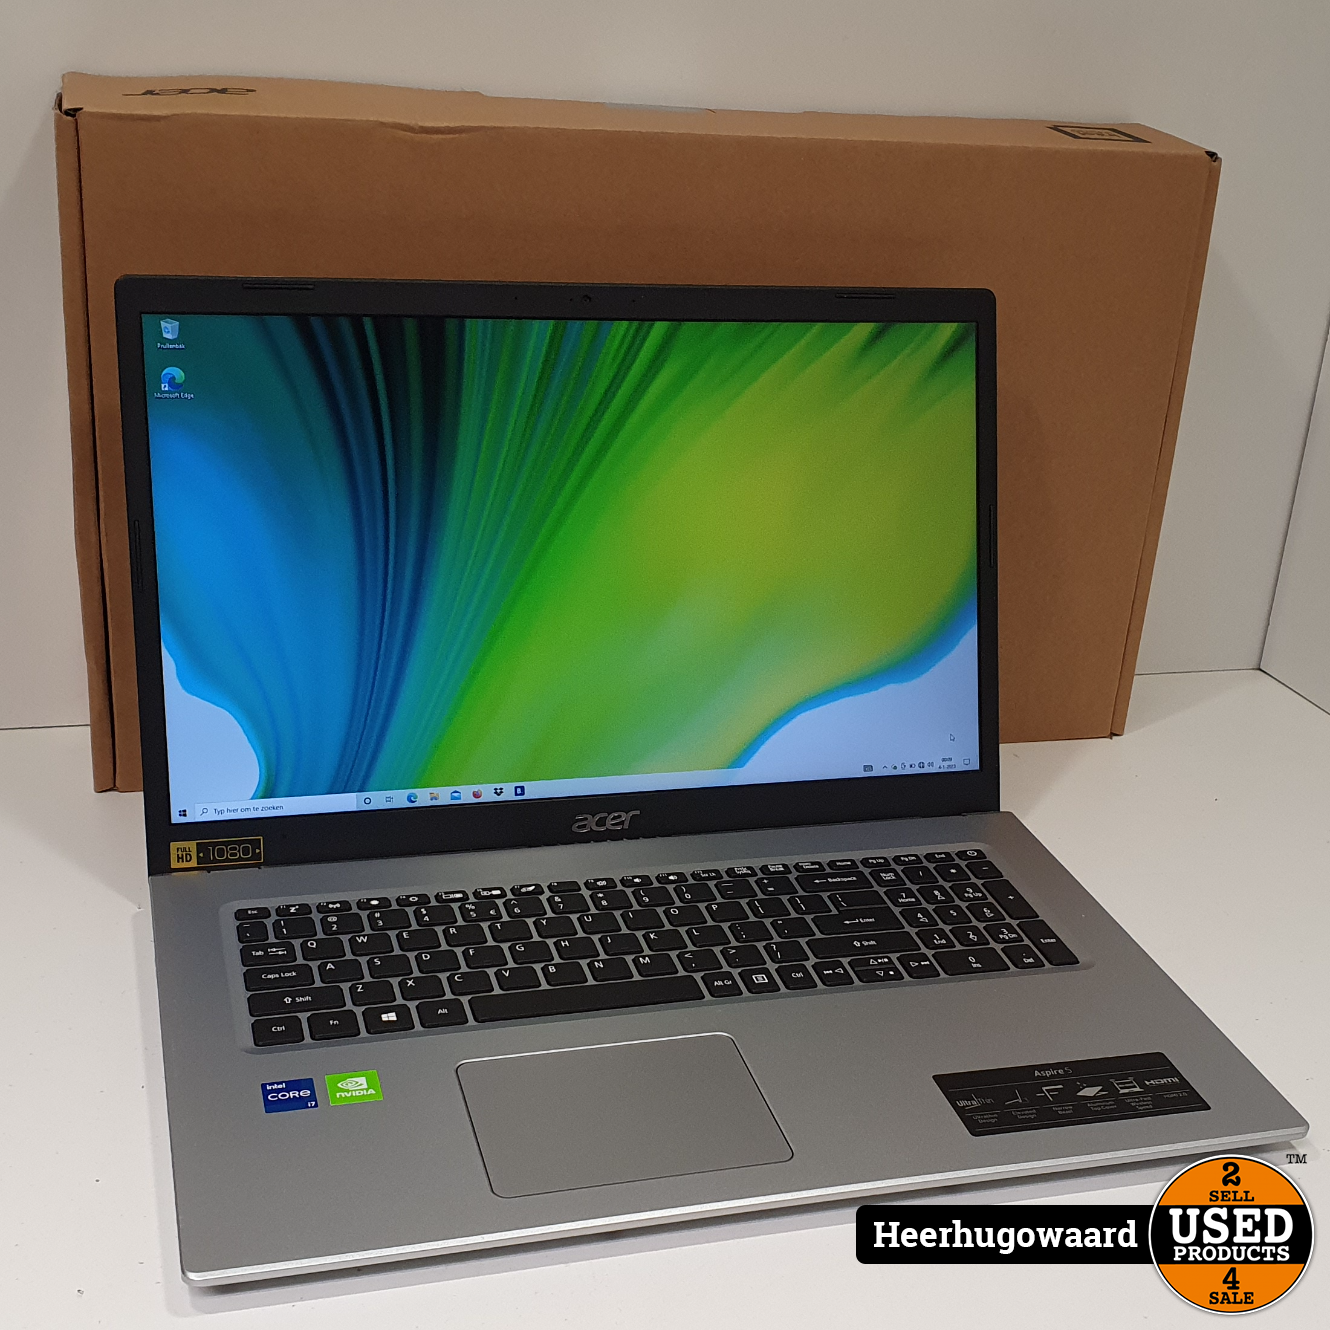 gebaar Veel ontwikkelen Acer Aspire 5 A517-52G-75YB 17,3'' Laptop ZGAN Compleet in Doos - Mediamarkt  Garantie - Used Products Heerhugowaard